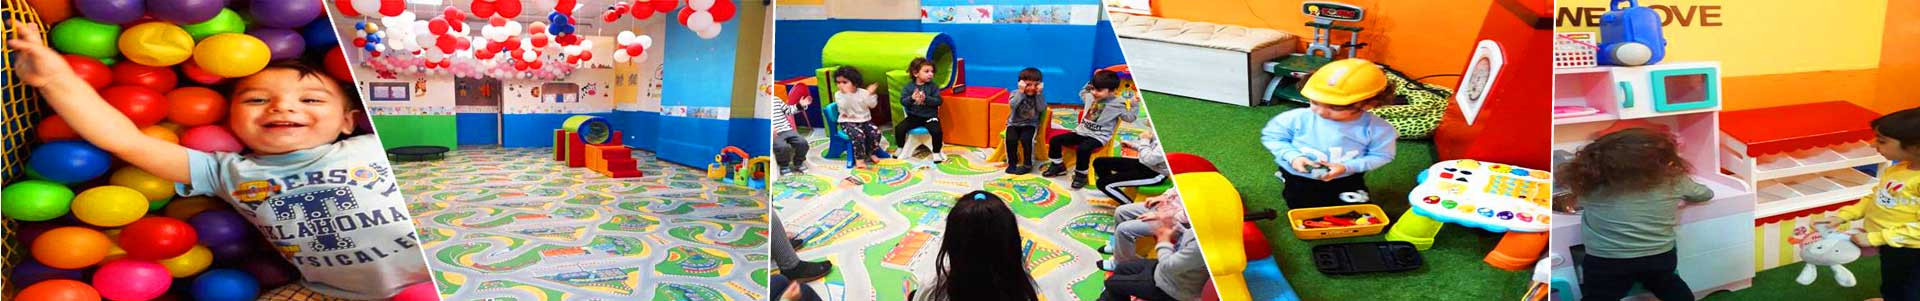 بهترین خرید خانه کودک تماشا تهران با بیشترین درصد تخفیف در قیمت - 40%